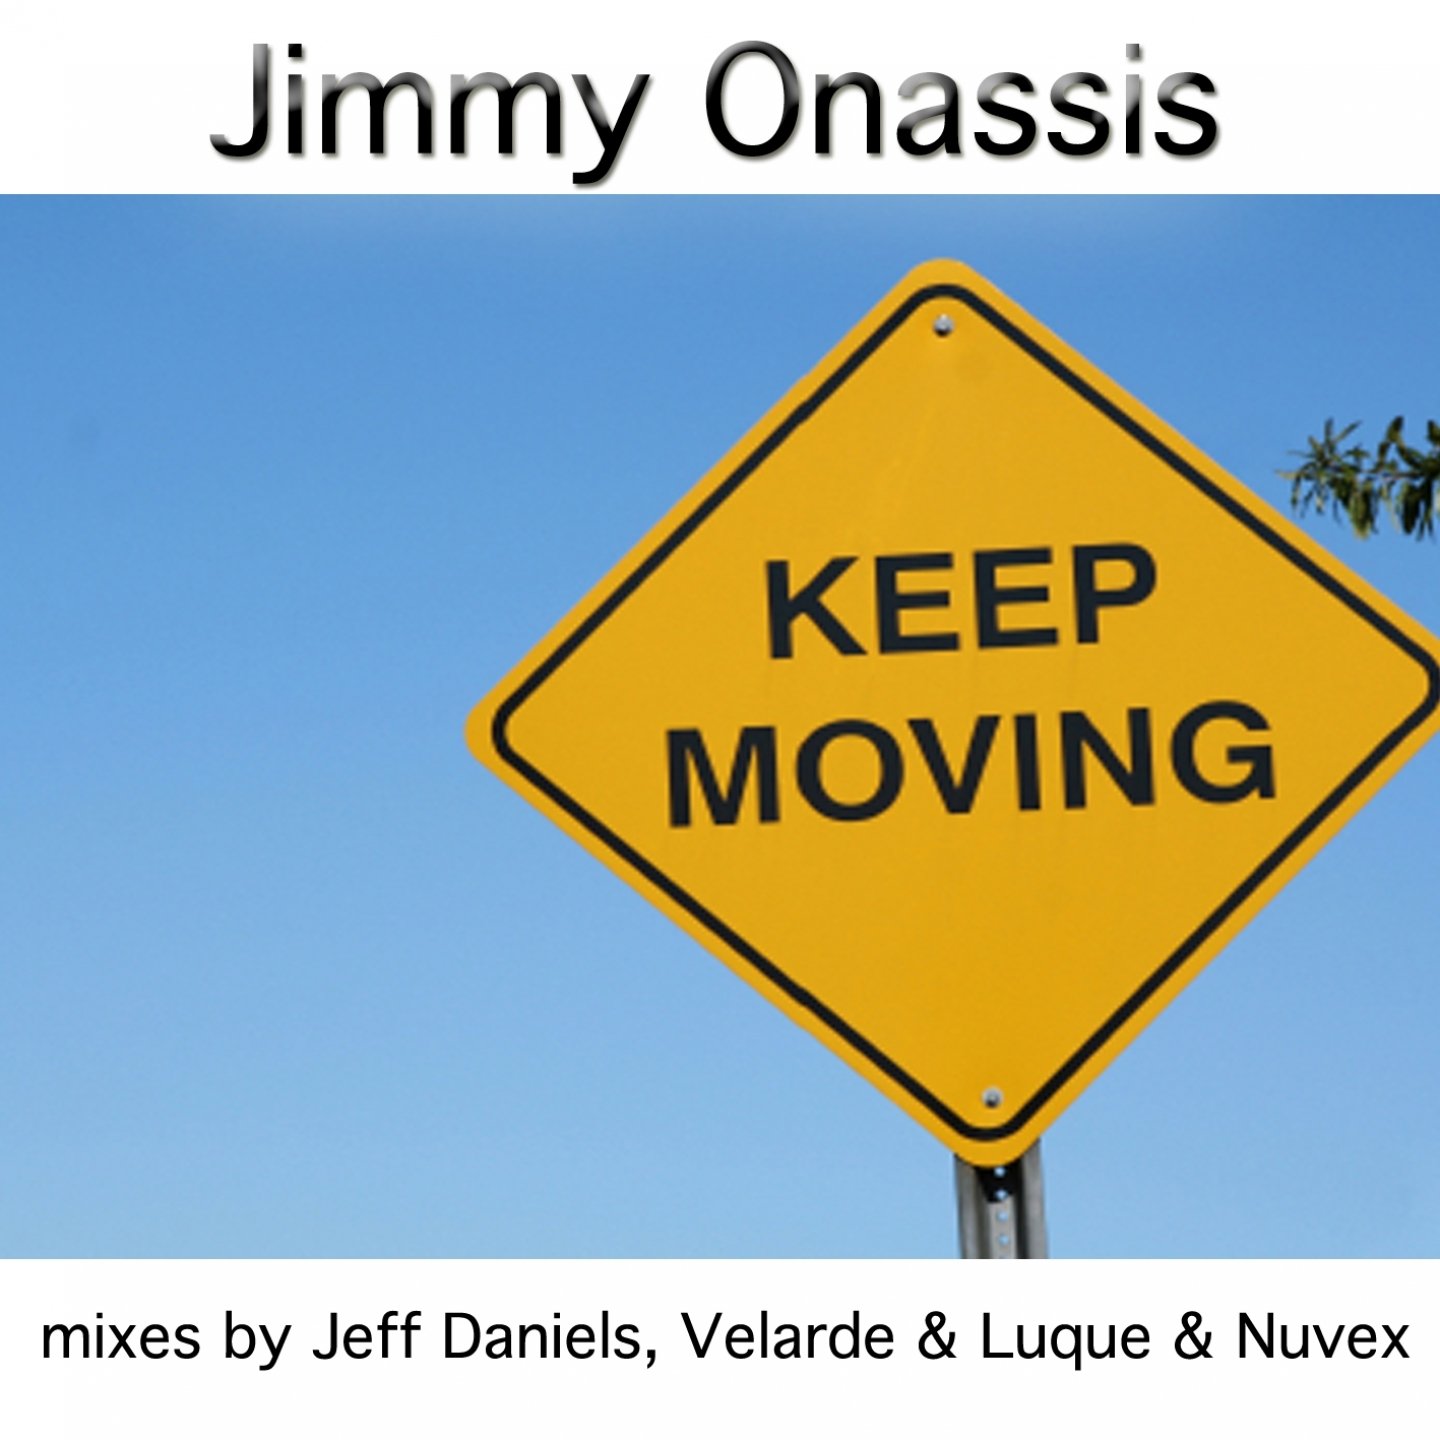 Kastuvas keep. Keep moving. Keep it moving исполнитель. Keep on moving kastuvas feat. Emie. Keep moving funny.